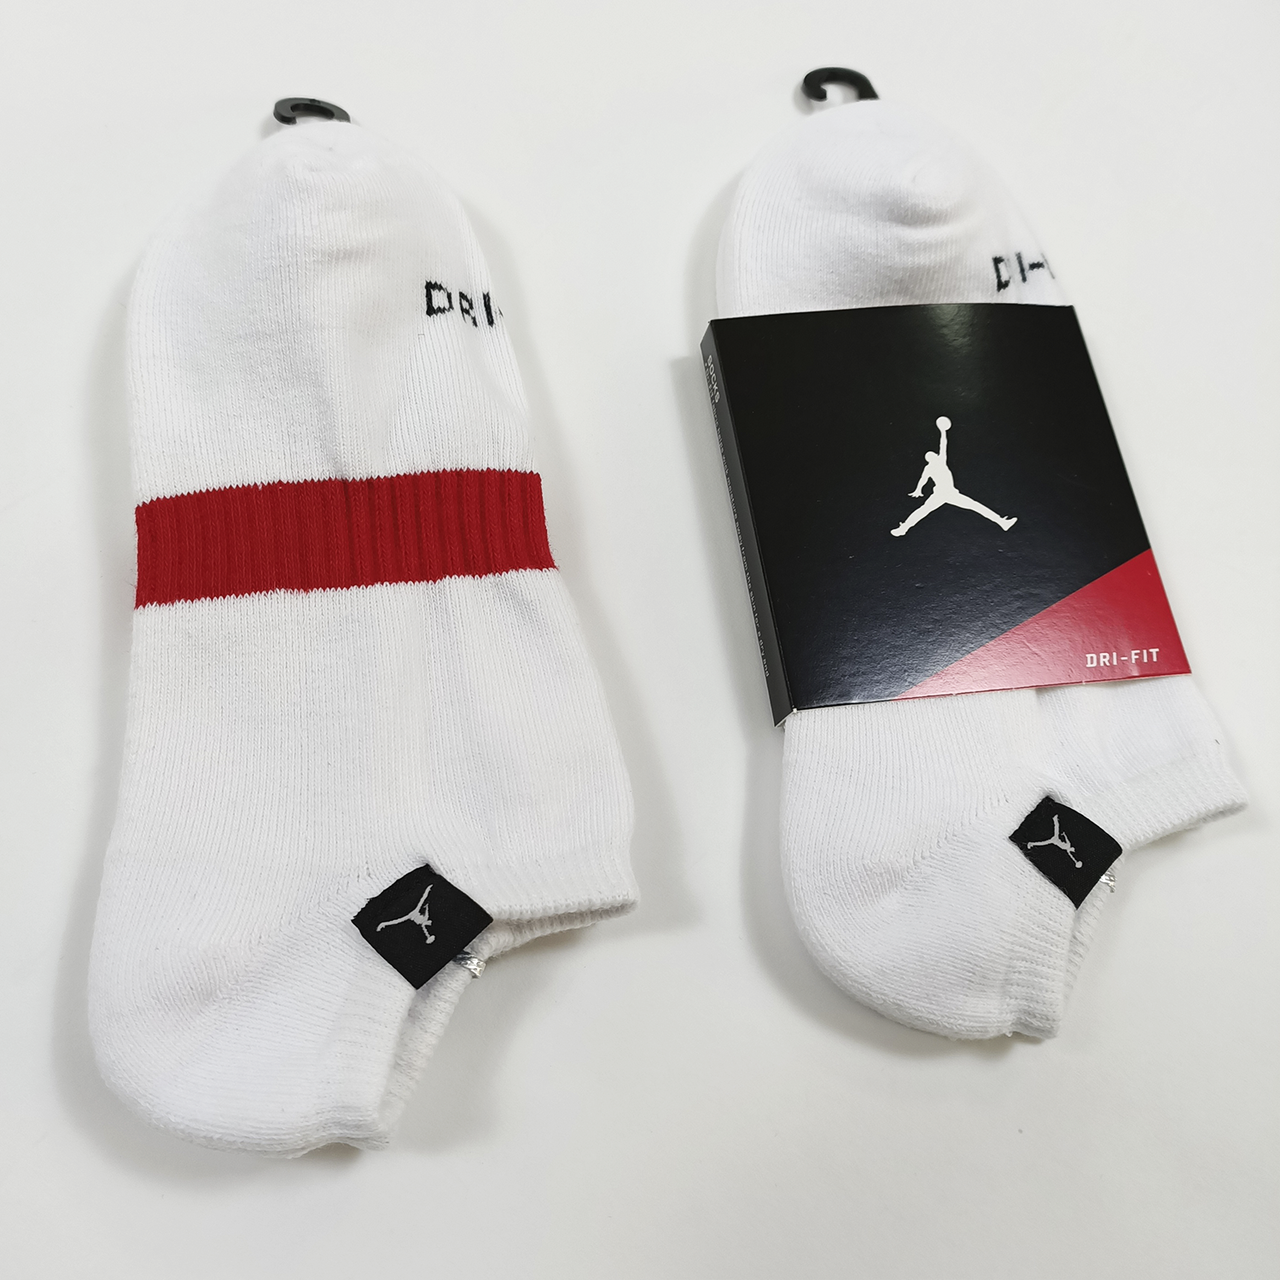 Короткие спортивные носки Jordan Dri-Fit короткі спортивні шкарпетки Джордан Дрі-Фіт